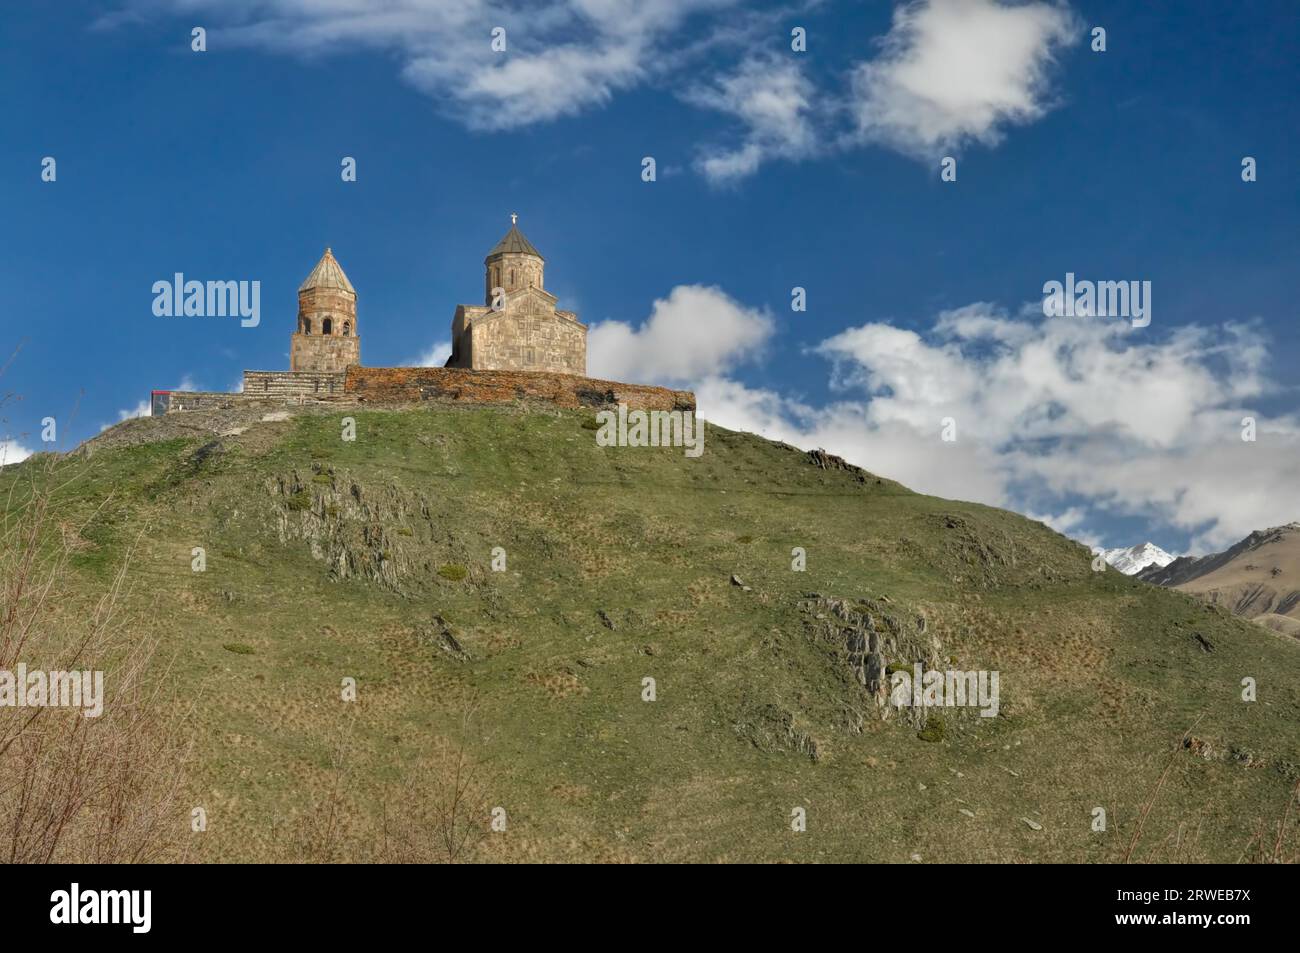 Vue panoramique d'une ancienne église géorgienne debout sur une colline en Géorgie Banque D'Images